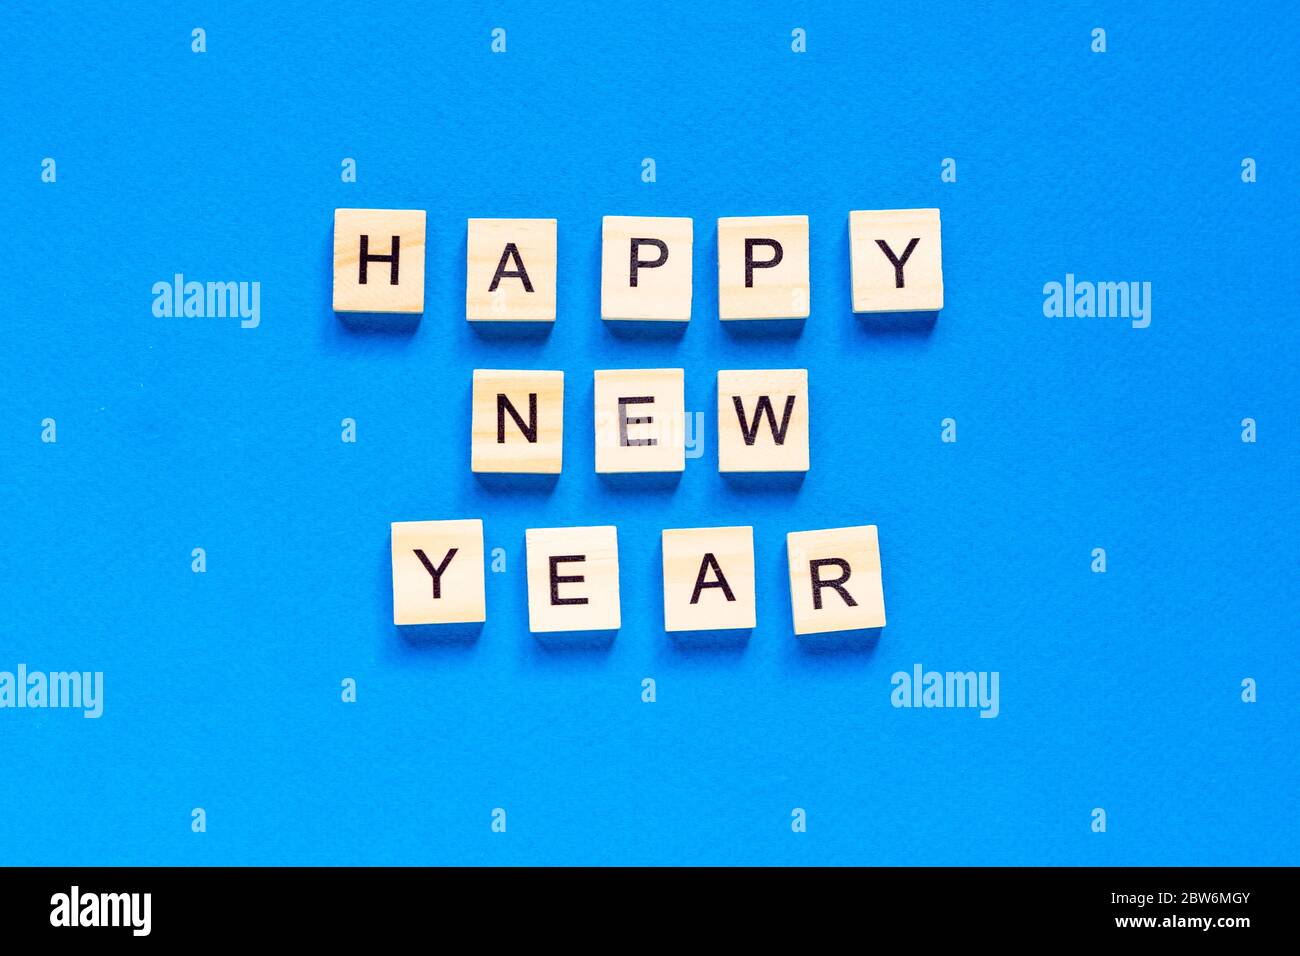 Felice anno nuovo scritto in lettere di legno su sfondo blu. Felice anno 2021. Vista dall'alto. Layout piatto. Spazio per testo. Foto Stock